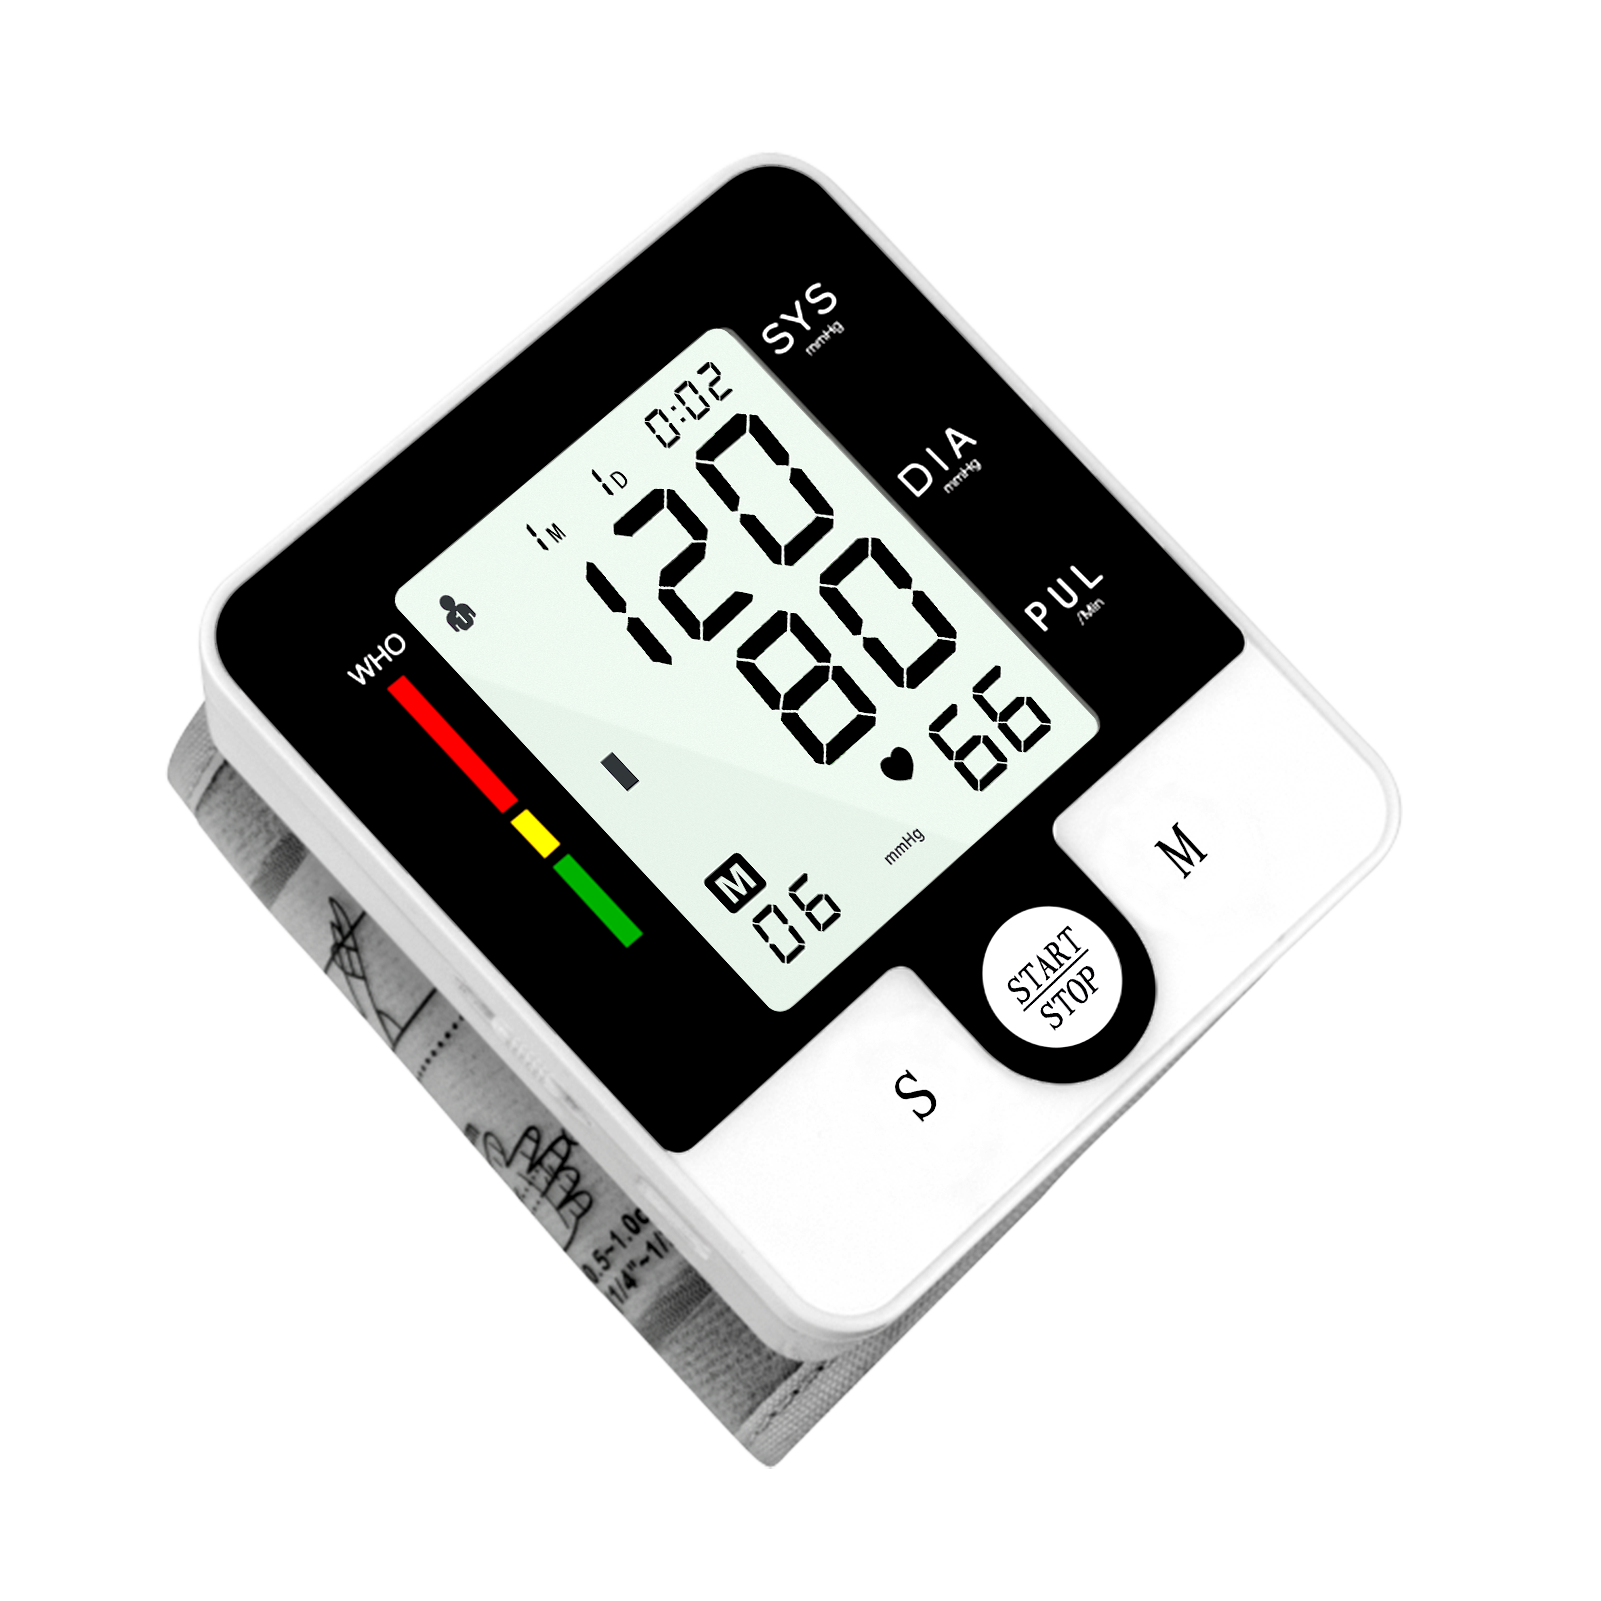 CK-W132英文手腕式血压计